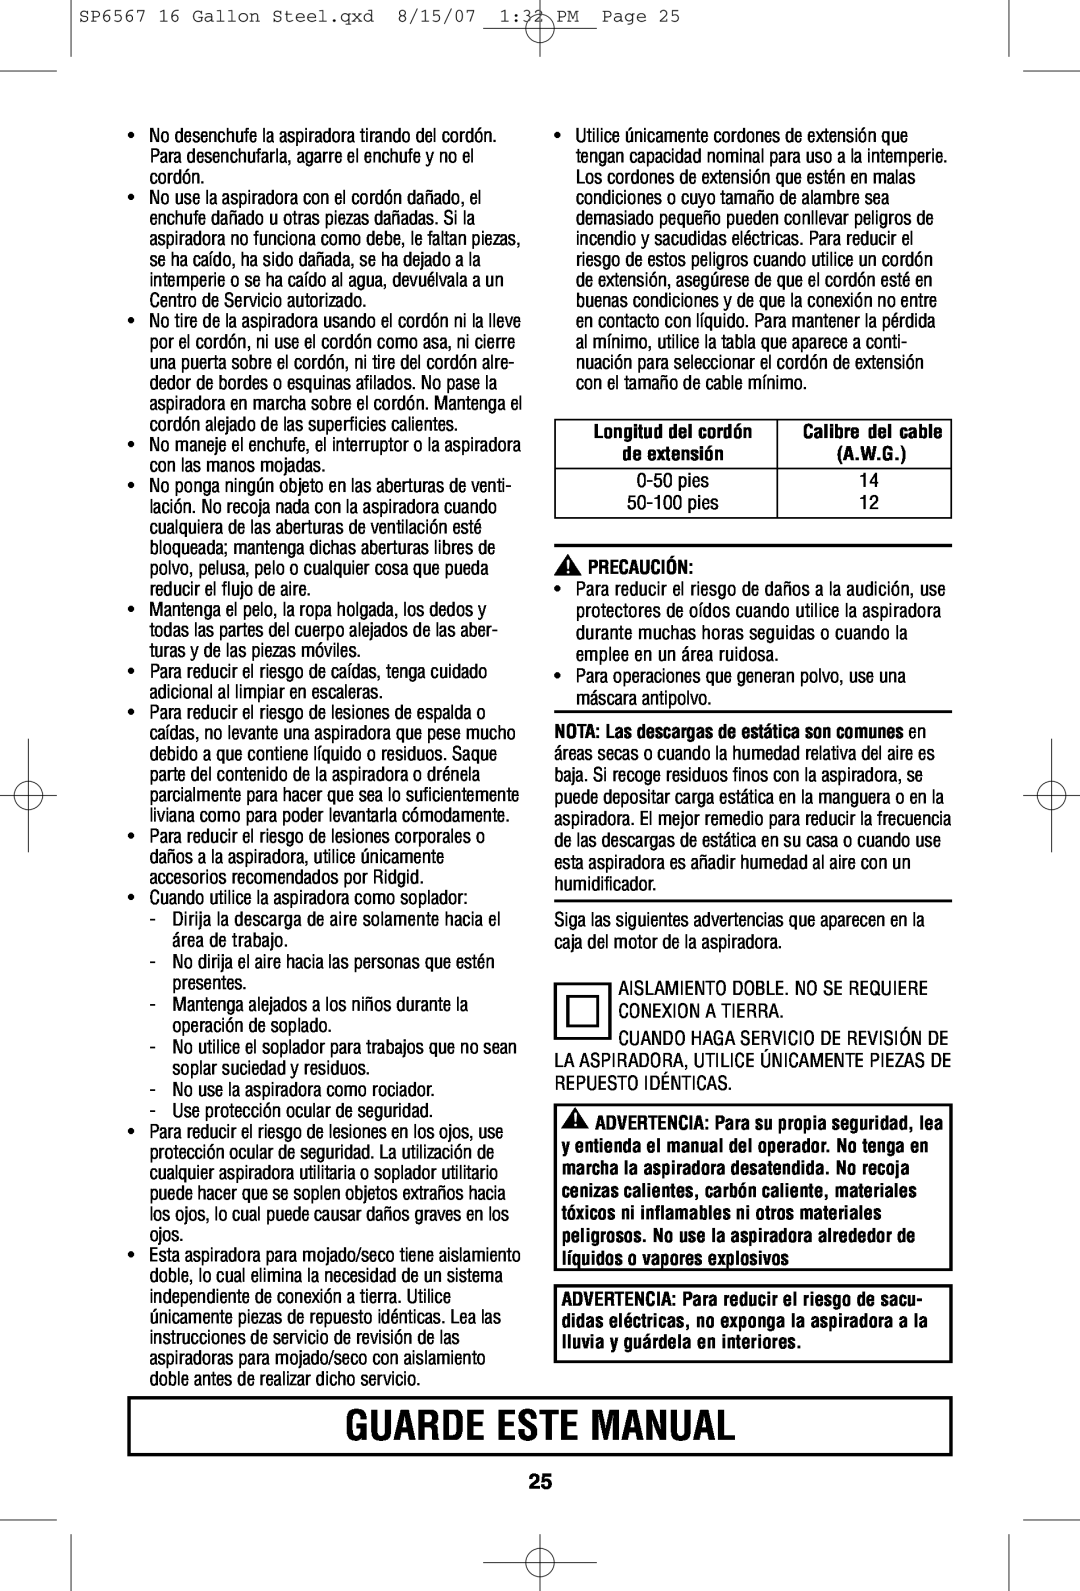 RIDGID WD1950 manual Guarde Este Manual, Precaución 